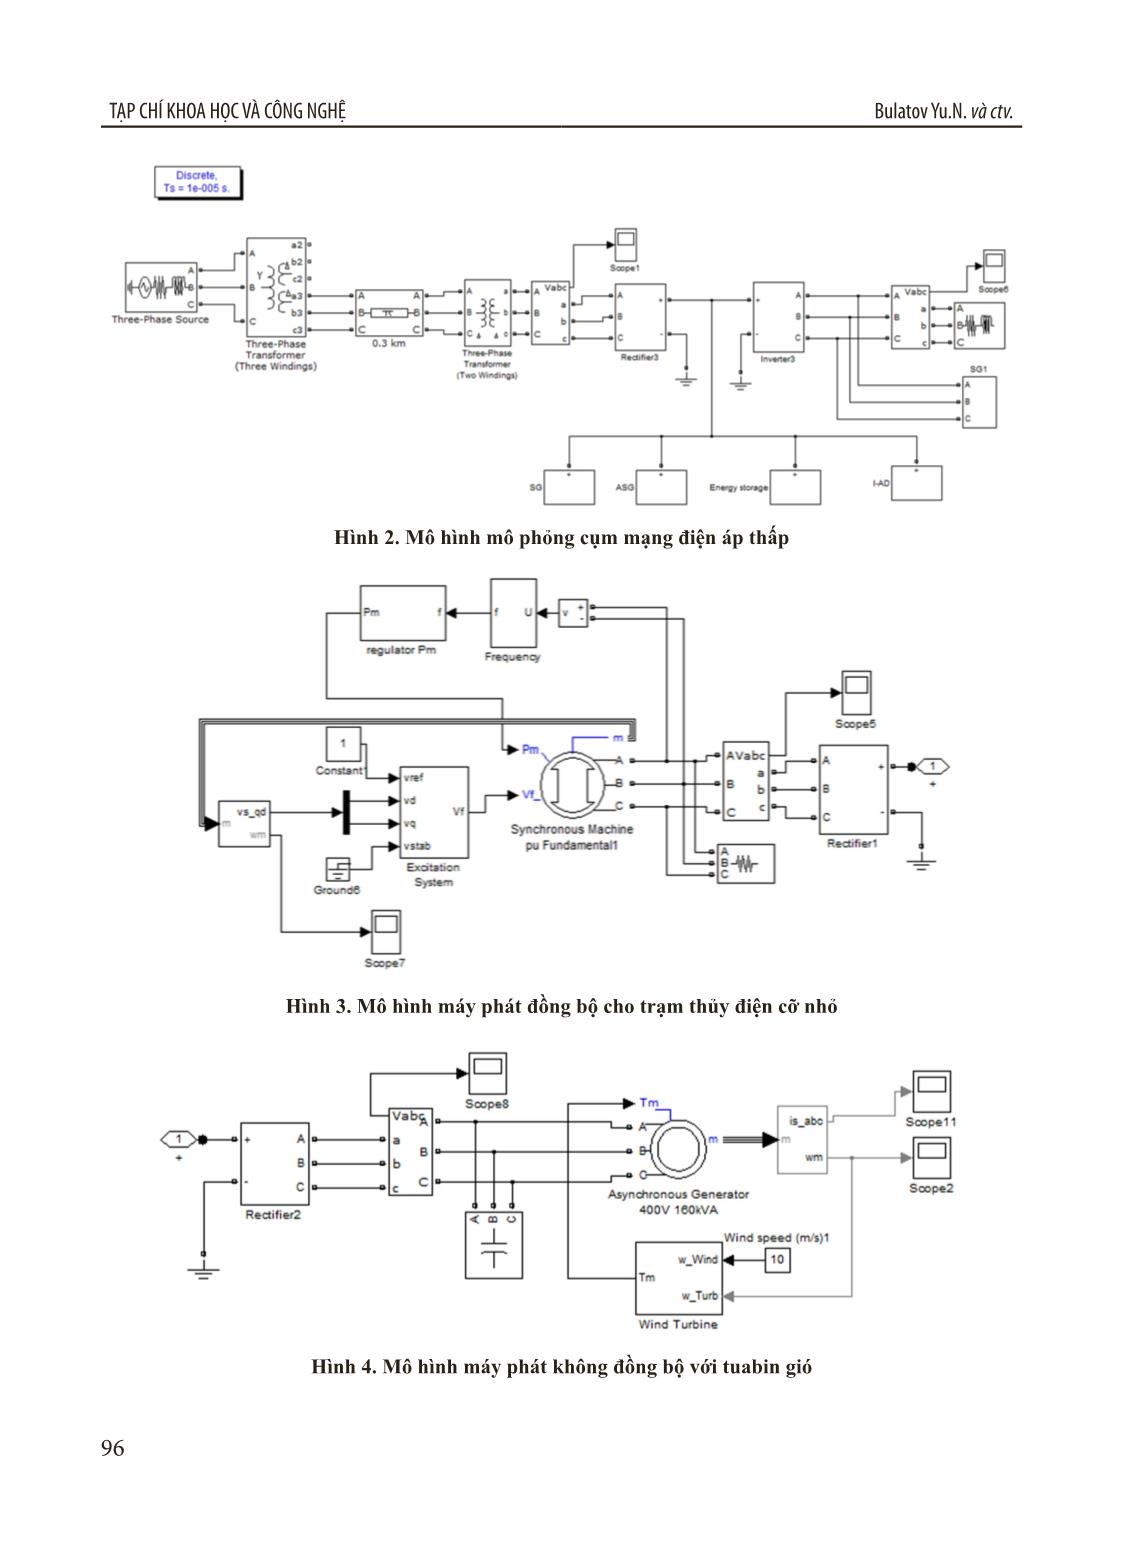 Điều khiển chế độ làm việc của cụm mạng điện áp thấp trang 3